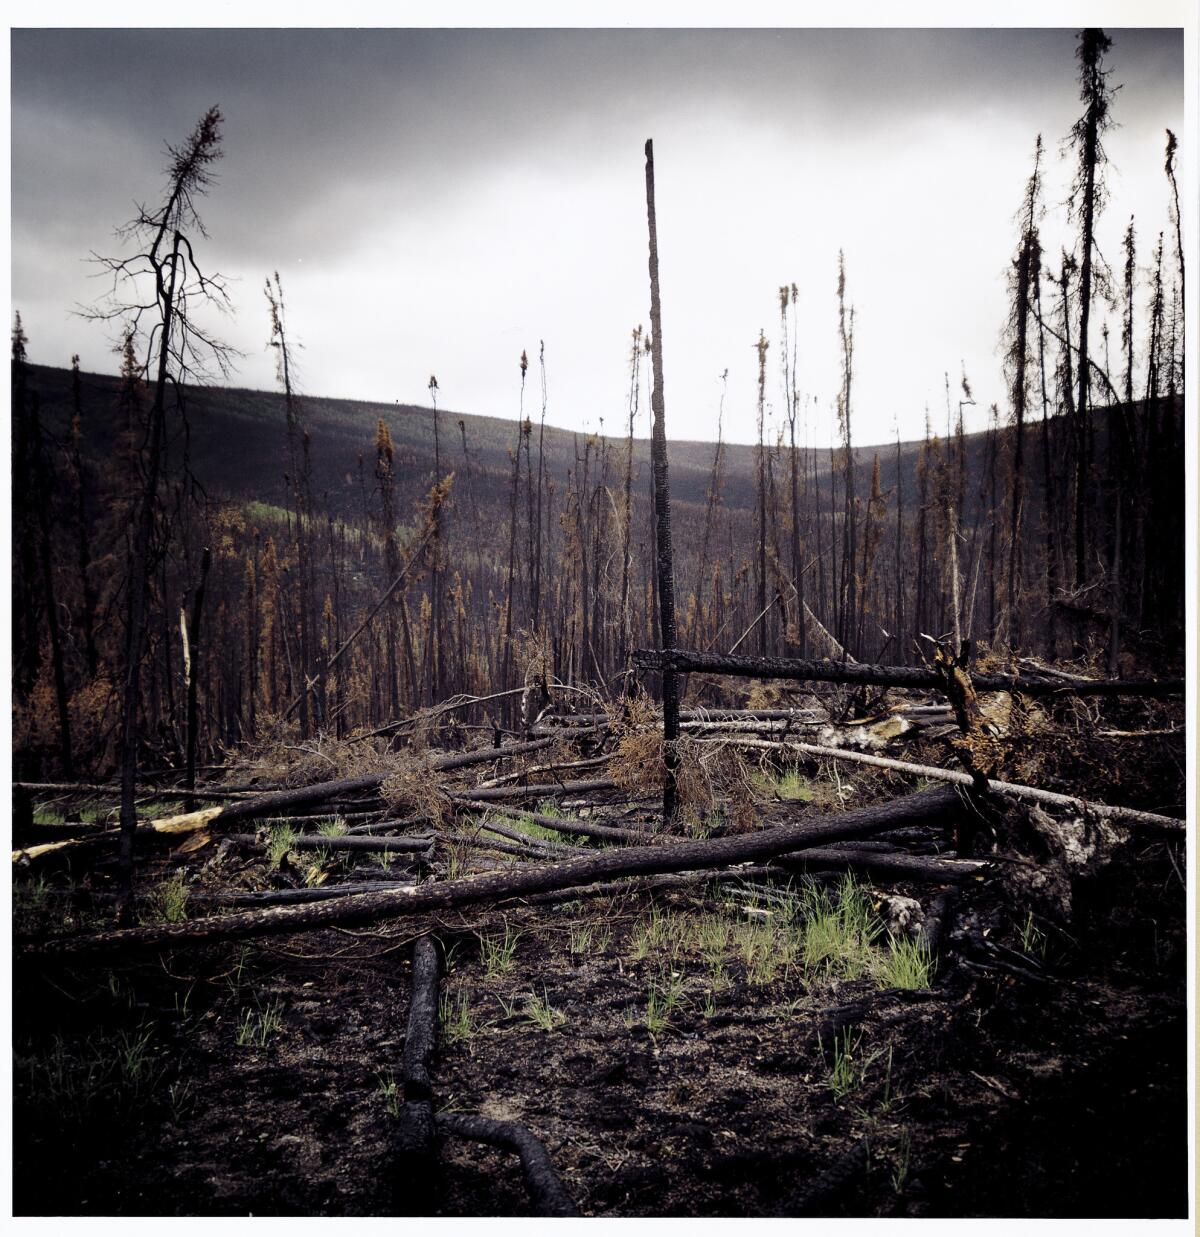 Burned forest in Alaska.